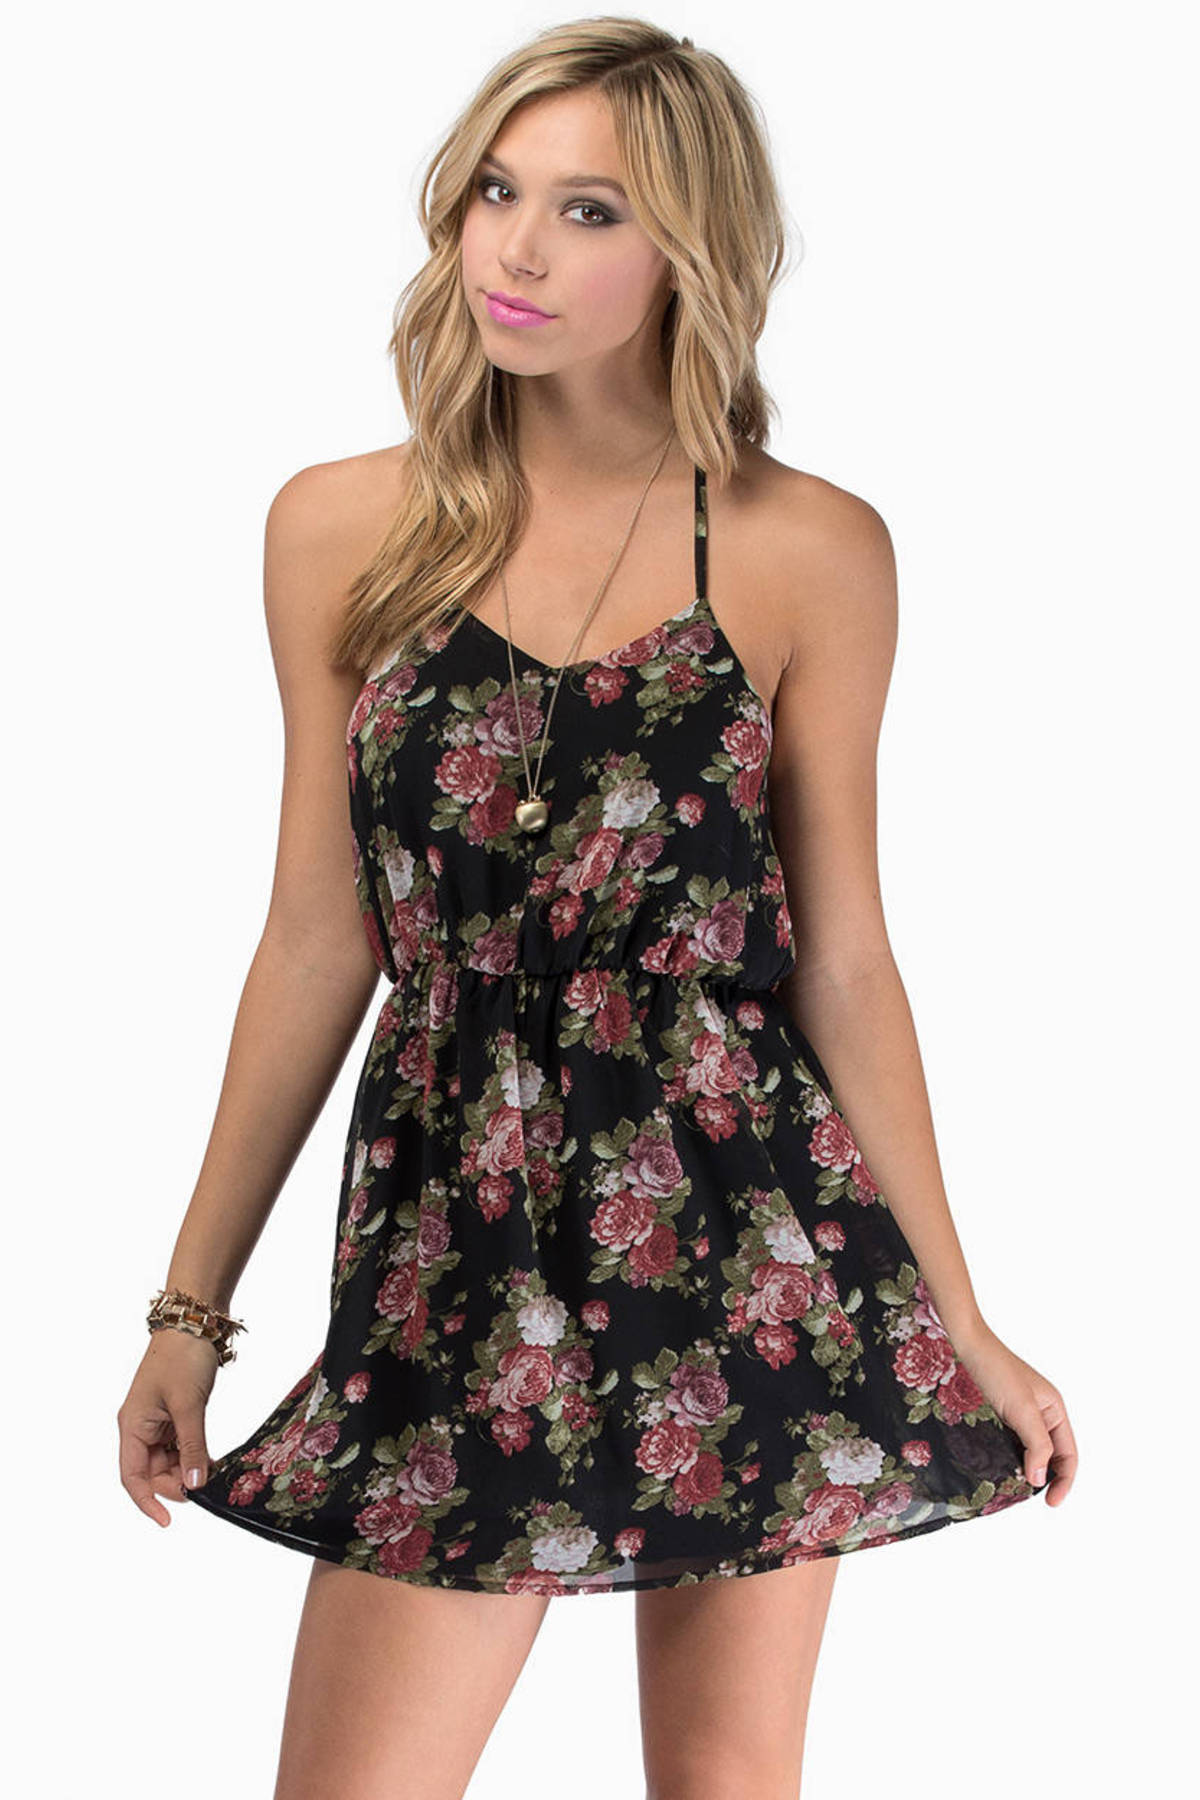 Rose Bed Back Strap Dress in Black Floral - $15 | Tobi US